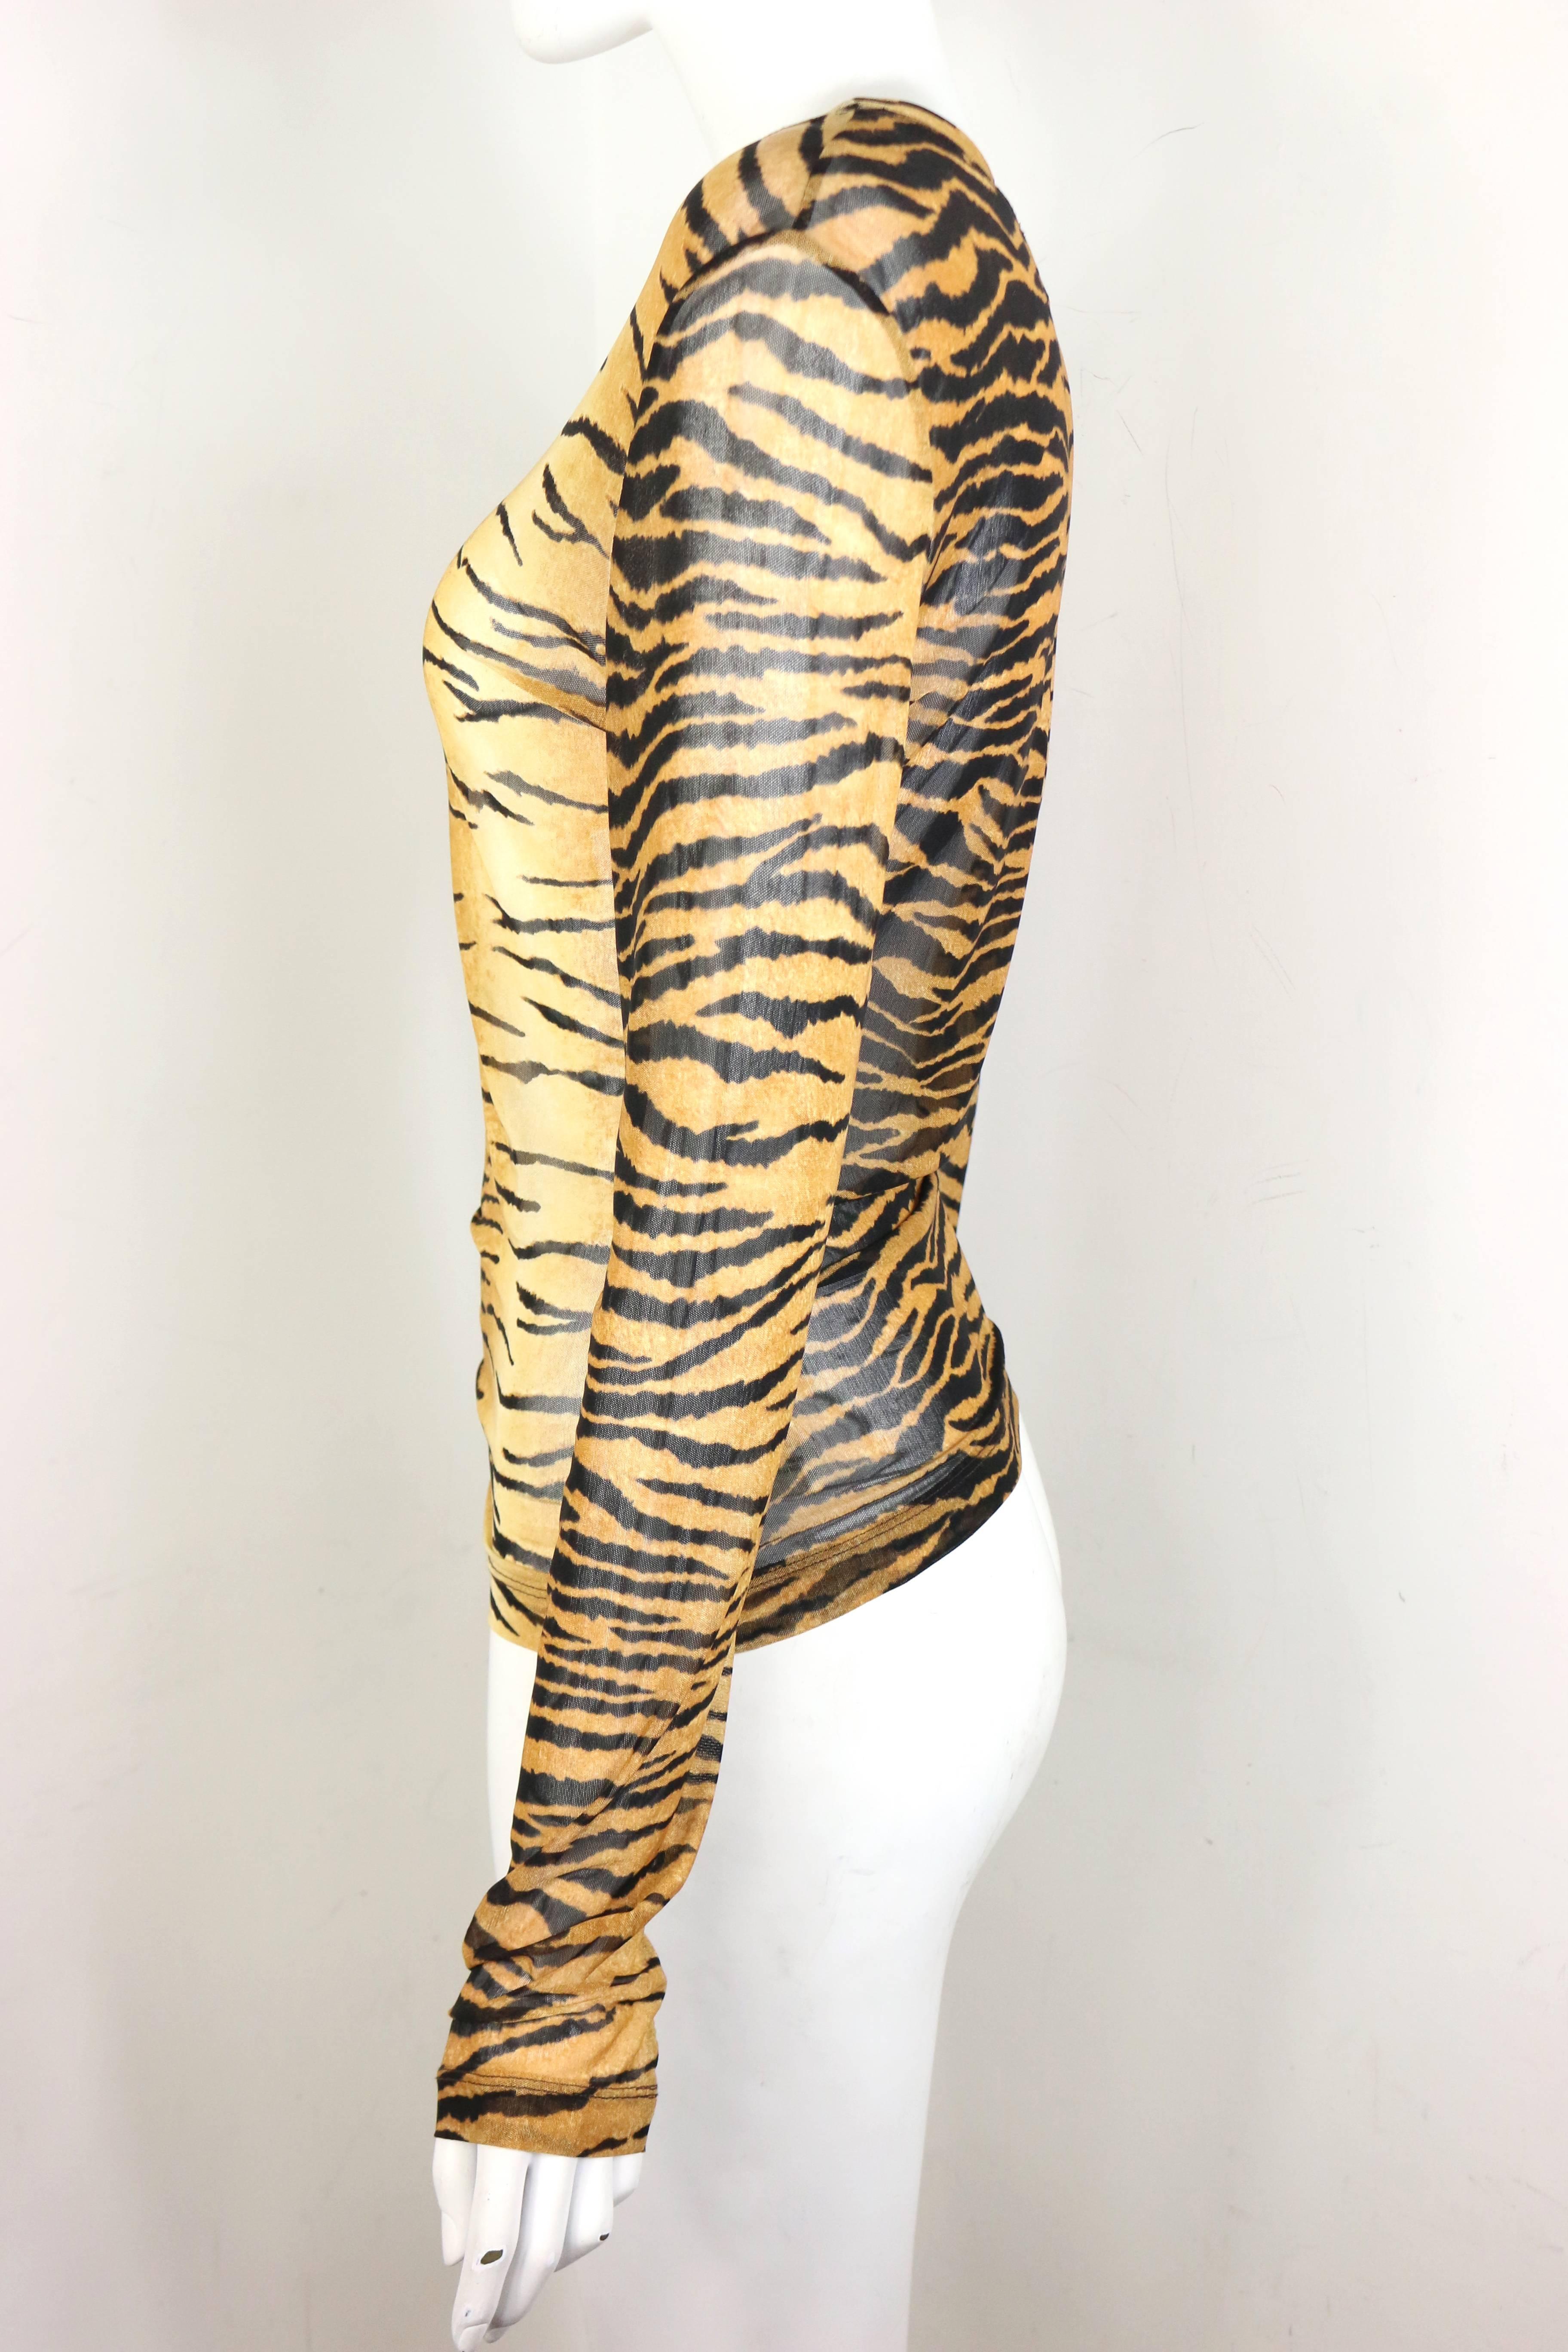 leopard long sleeve top